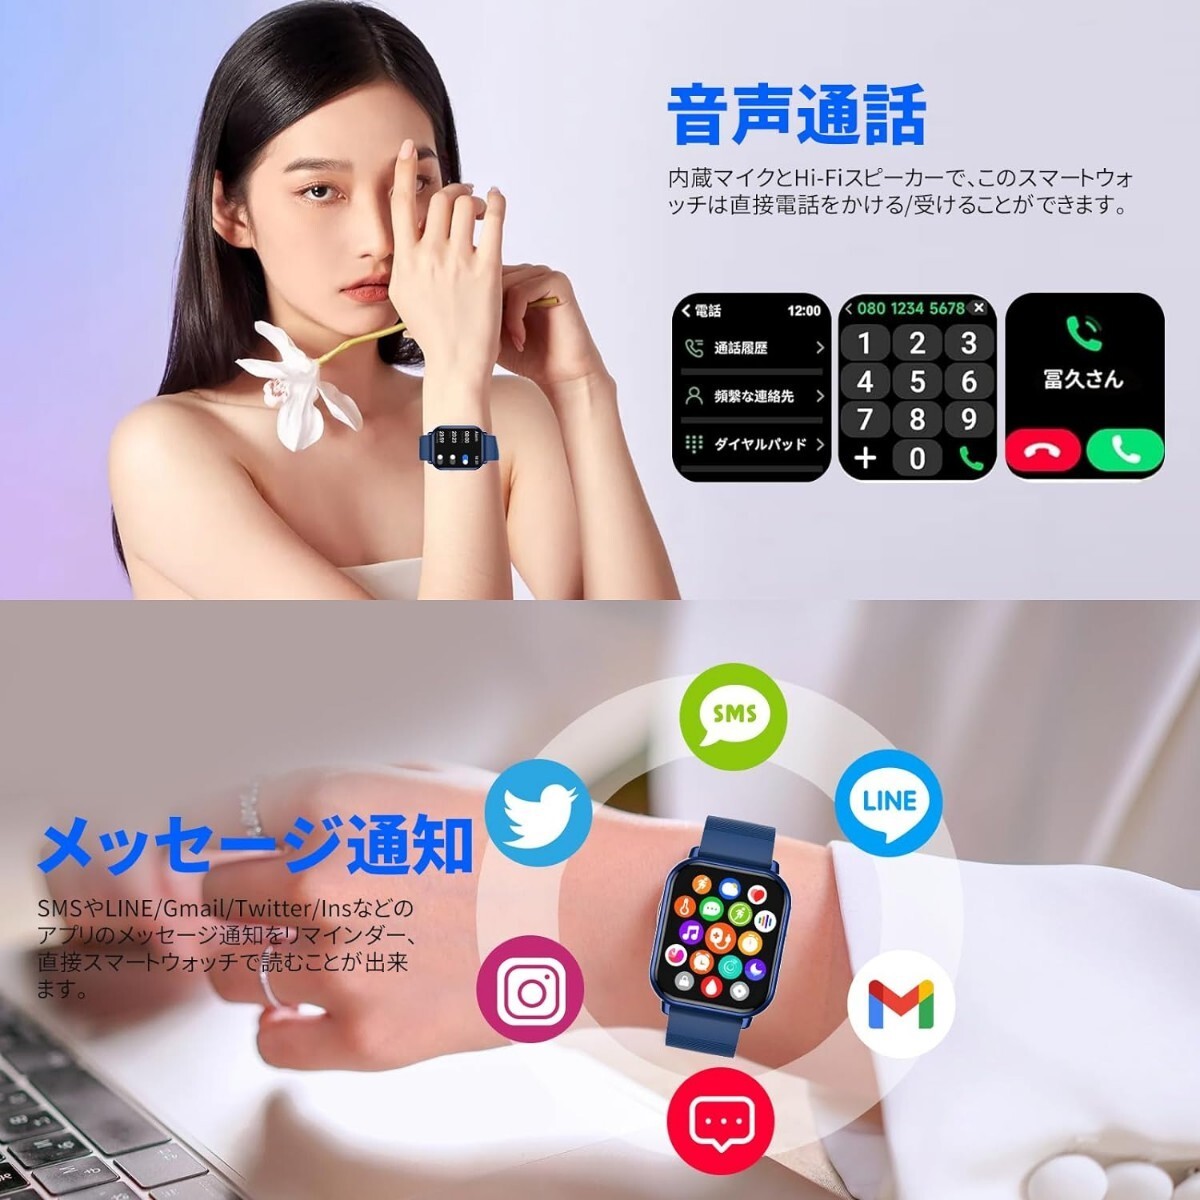 ◆新品 本体 スマートウォッチ 着信通知 ブルー 青 防水 1.85インチ大画面 腕時計 Bluetooth iPhone対応 Android対応 日本語説明書 _画像5